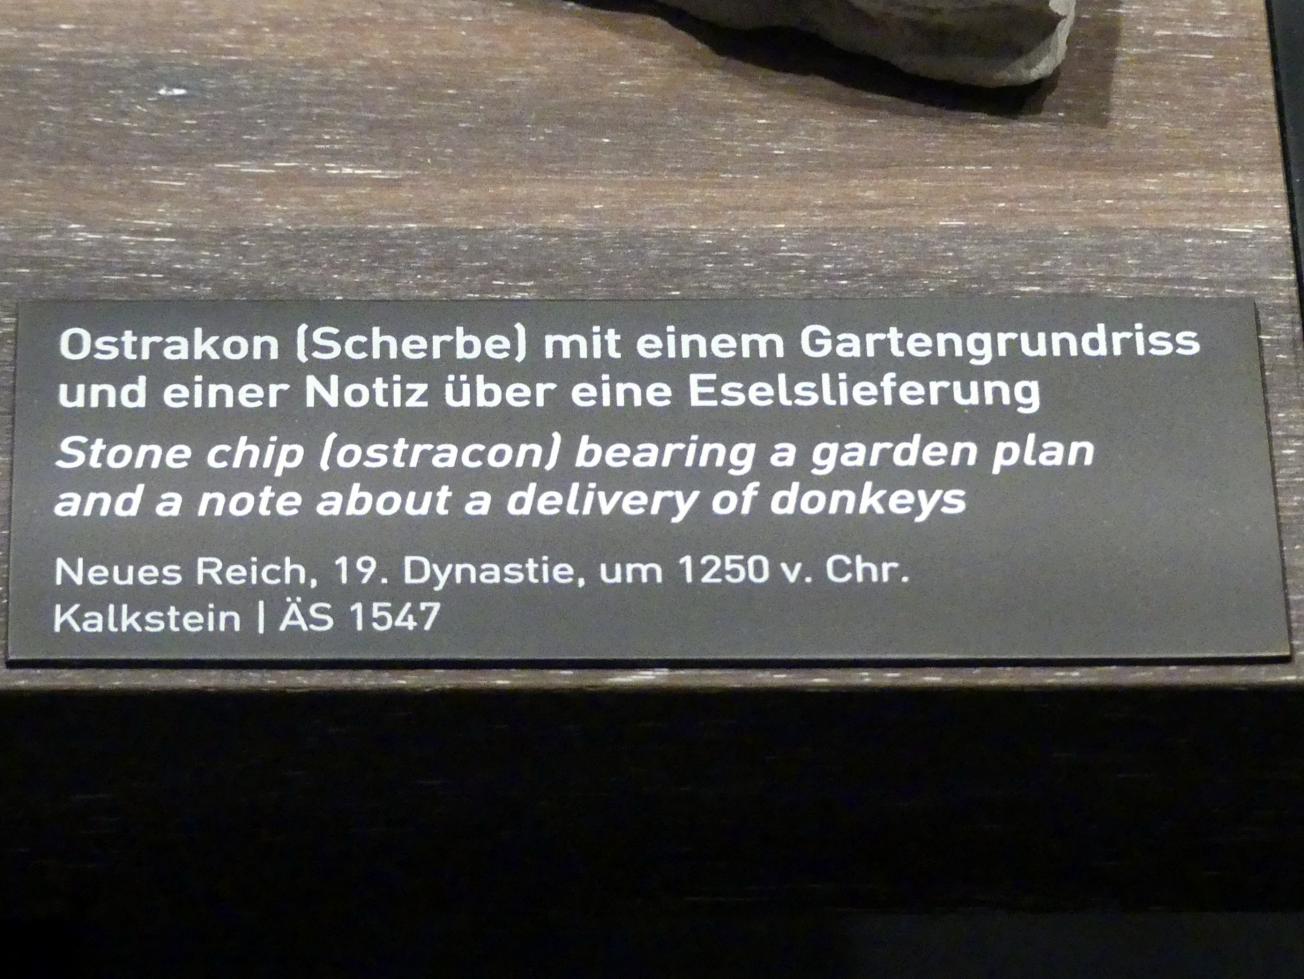 Ostrakon (Scherbe) mit einem Gartengrundriss und einer Notiz über eine Eselslieferung, 19. Dynastie, 966 - 859 v. Chr., 1250 v. Chr., Bild 2/2